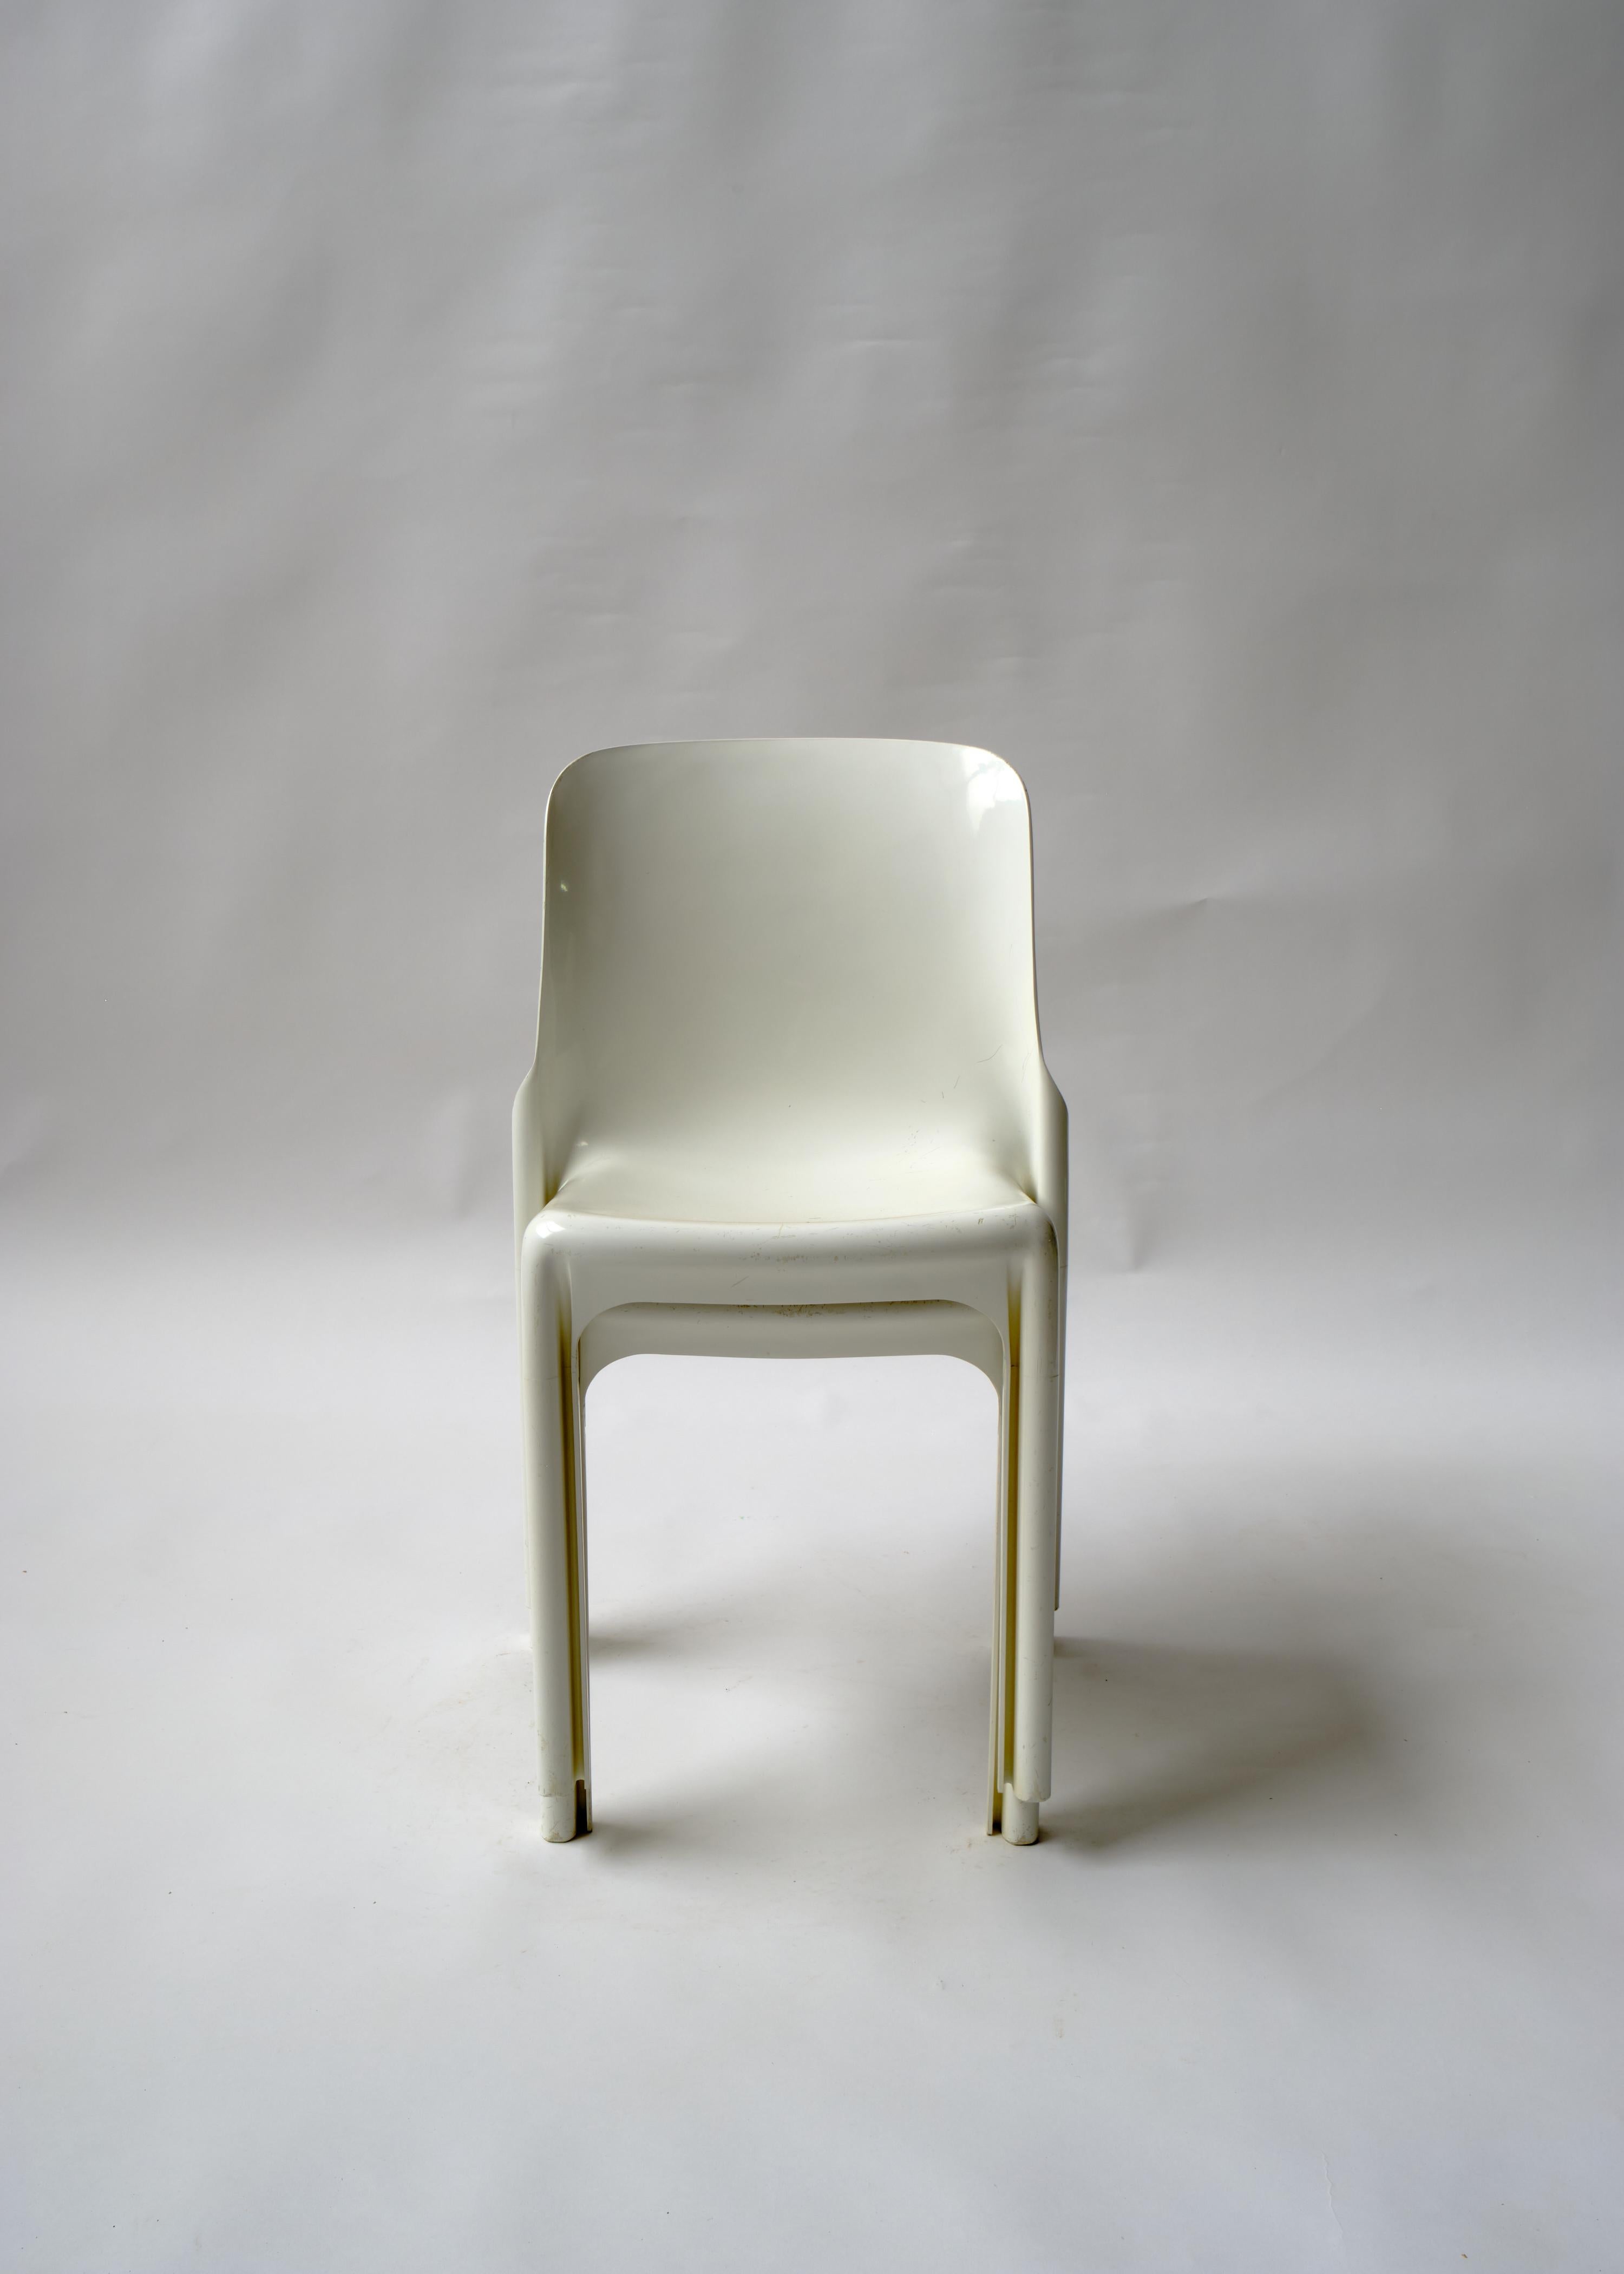 Der Selene von Vico Magistretti war einer der ersten kommerziell hergestellten Stühle, die aus einer einzigen Kunststoffplatte gepresst wurden.

Die Selene wurde 1961 von Magistretti entworfen, aber es dauerte mehrere Jahre, bis er zusammen mit den